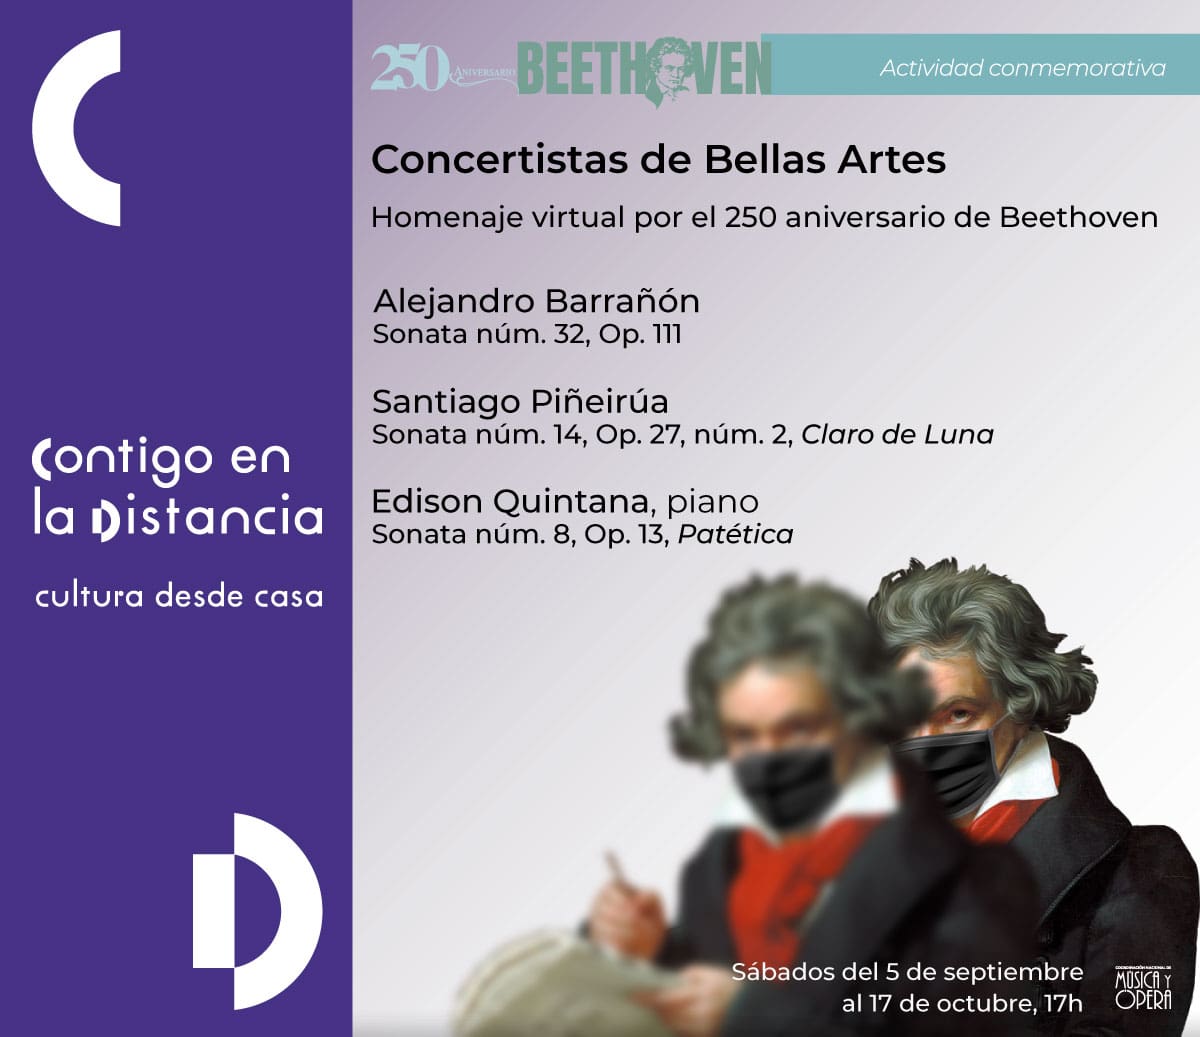 Concertistas de Bellas Artes rememoran el 250 aniversario del natalicio de Beethoven con recitales virtuales